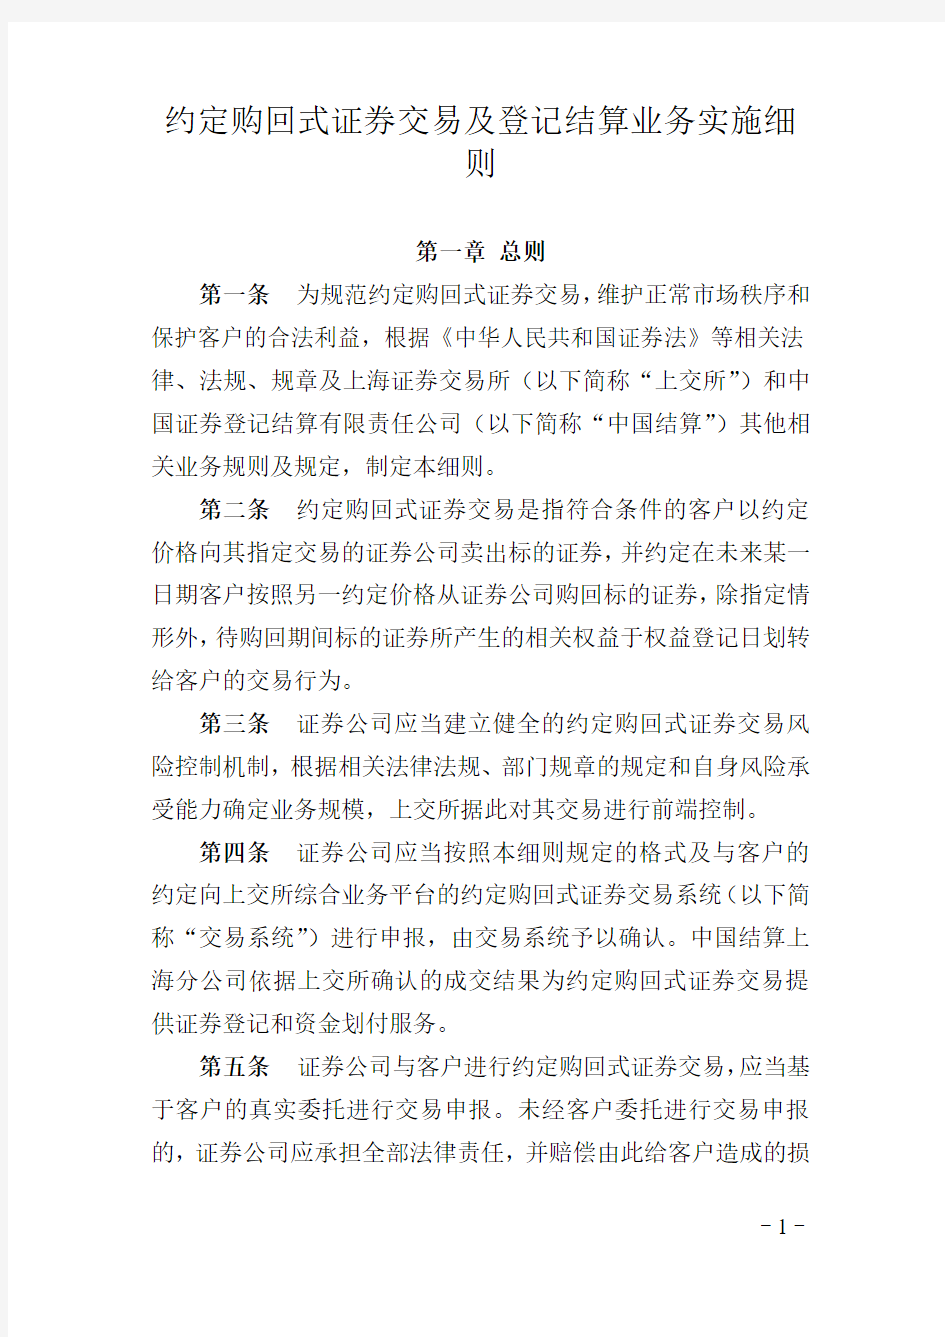 上海约定购回式证券交易及登记结算业务实施细则